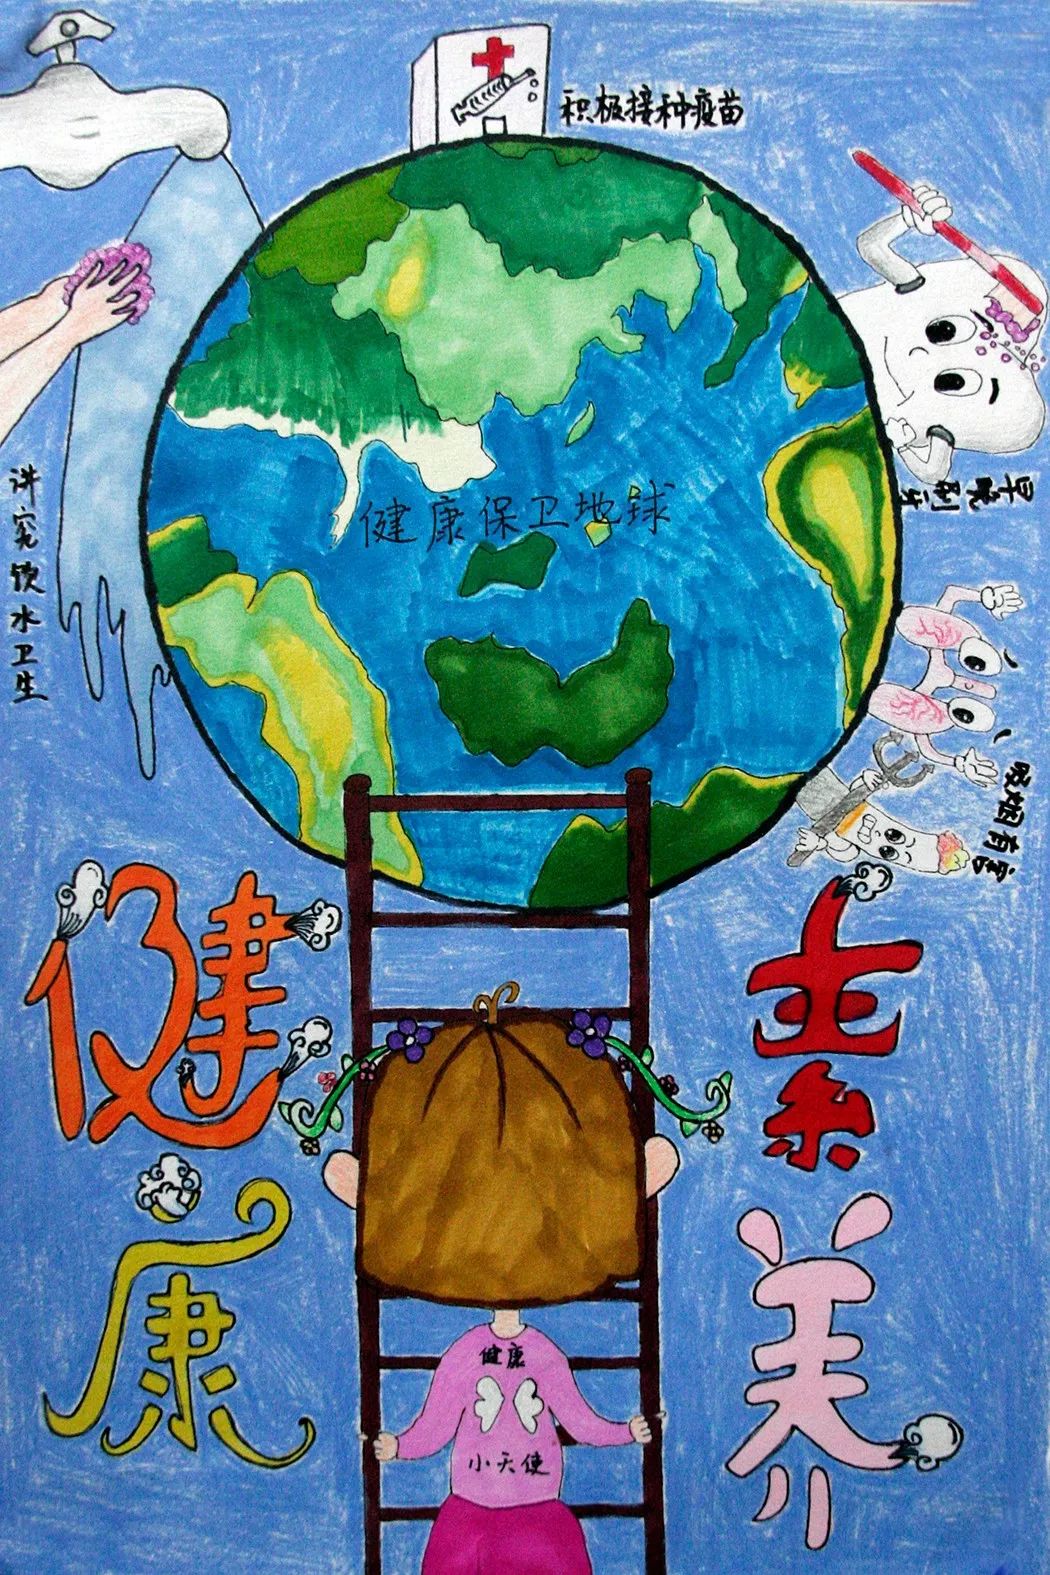 昌平区北京市小学生健康素养优秀绘画作品巡展活动圆满落幕